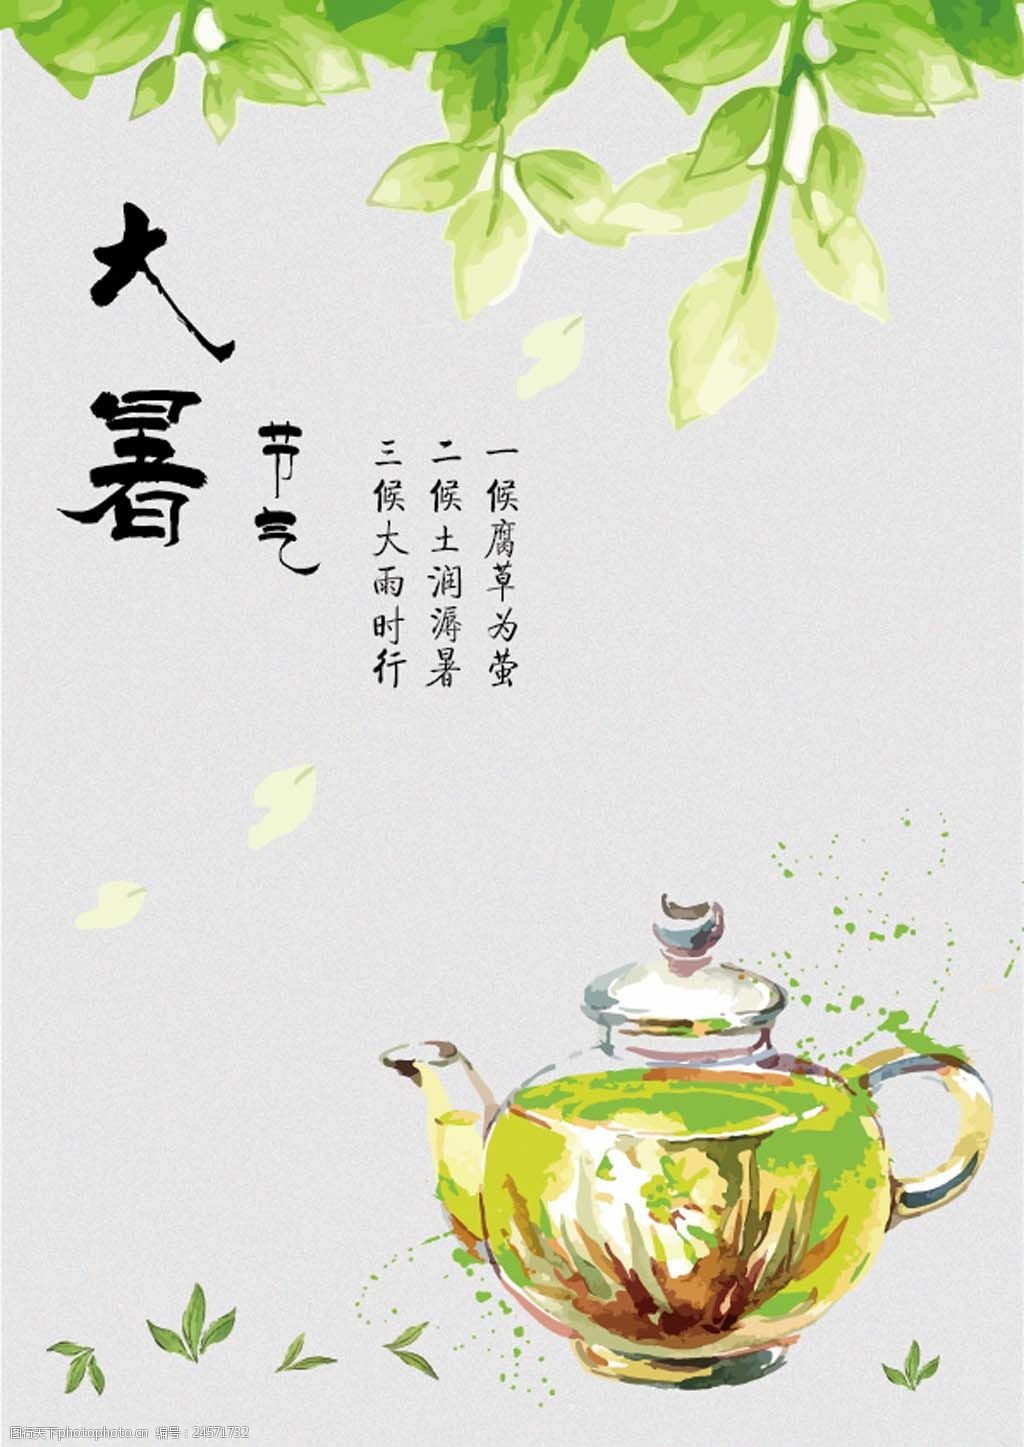 关键词:大暑节气海报 清新 大暑节气 茶 水彩画 绿色